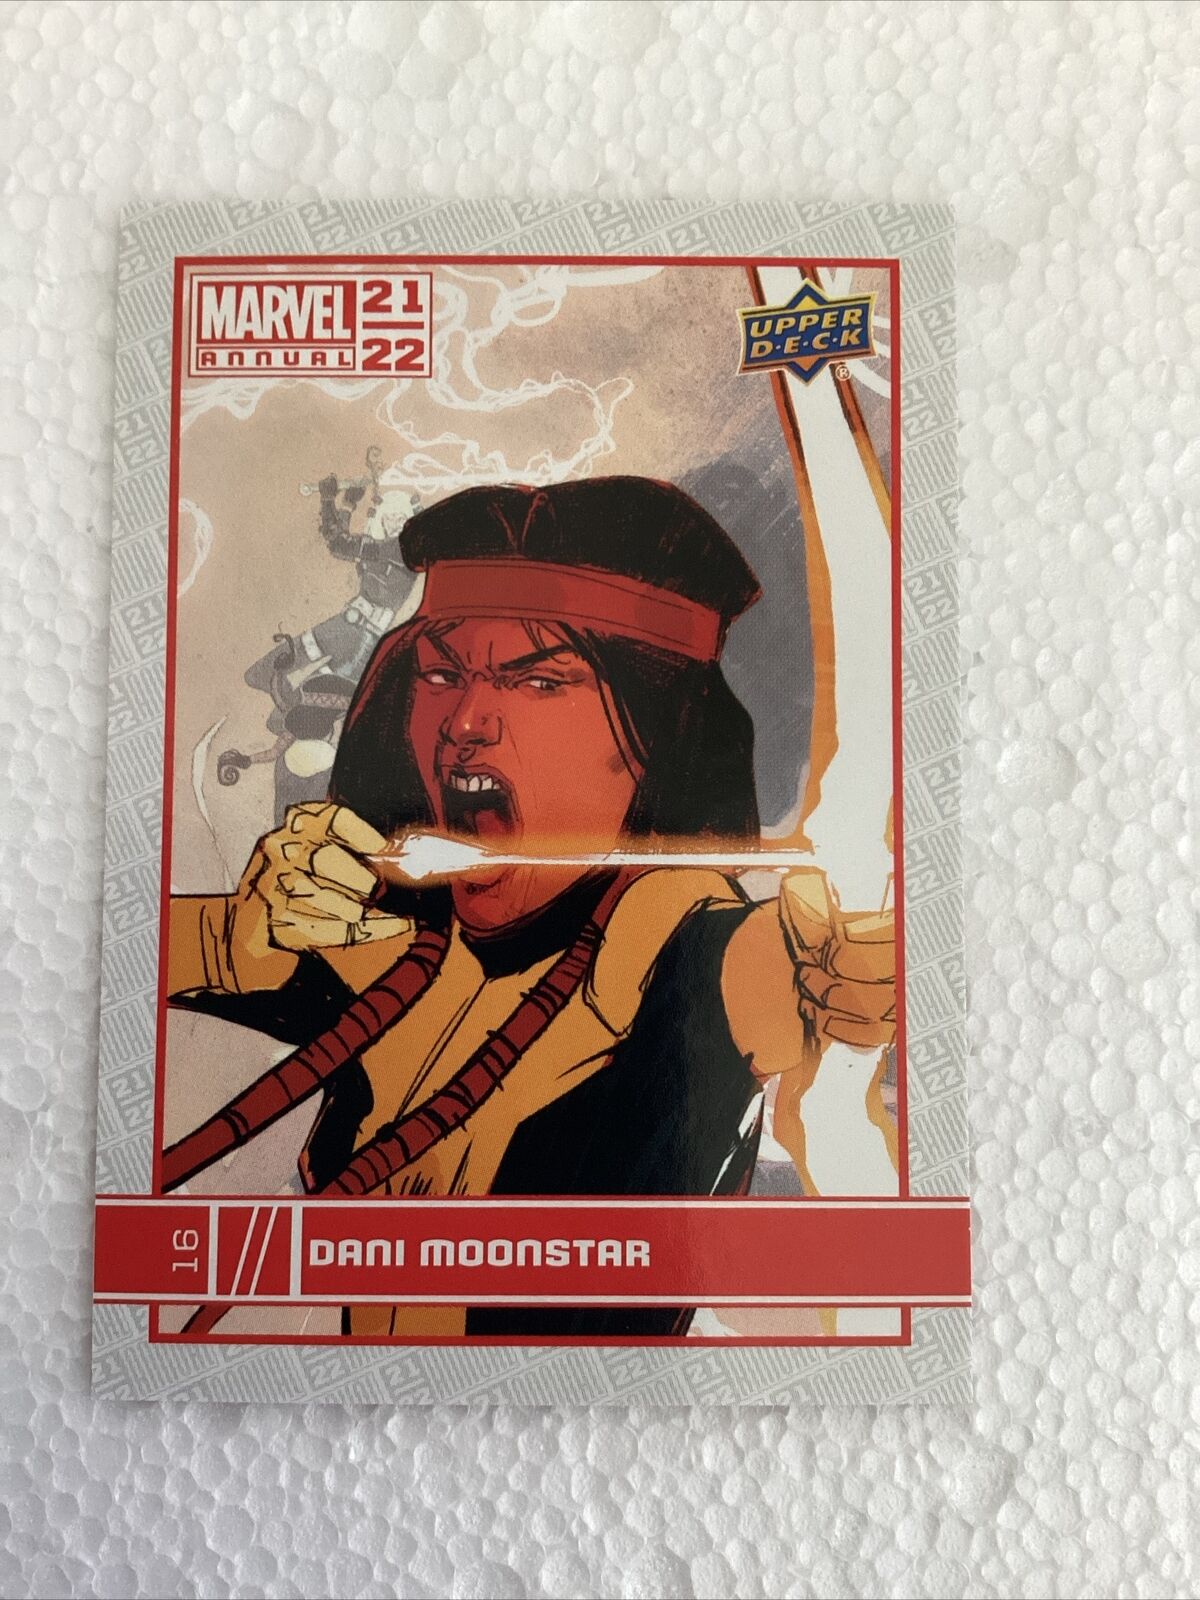 2021/22 Upper Deck Marvel Annual Dani Moonstar #16 Trading Card 